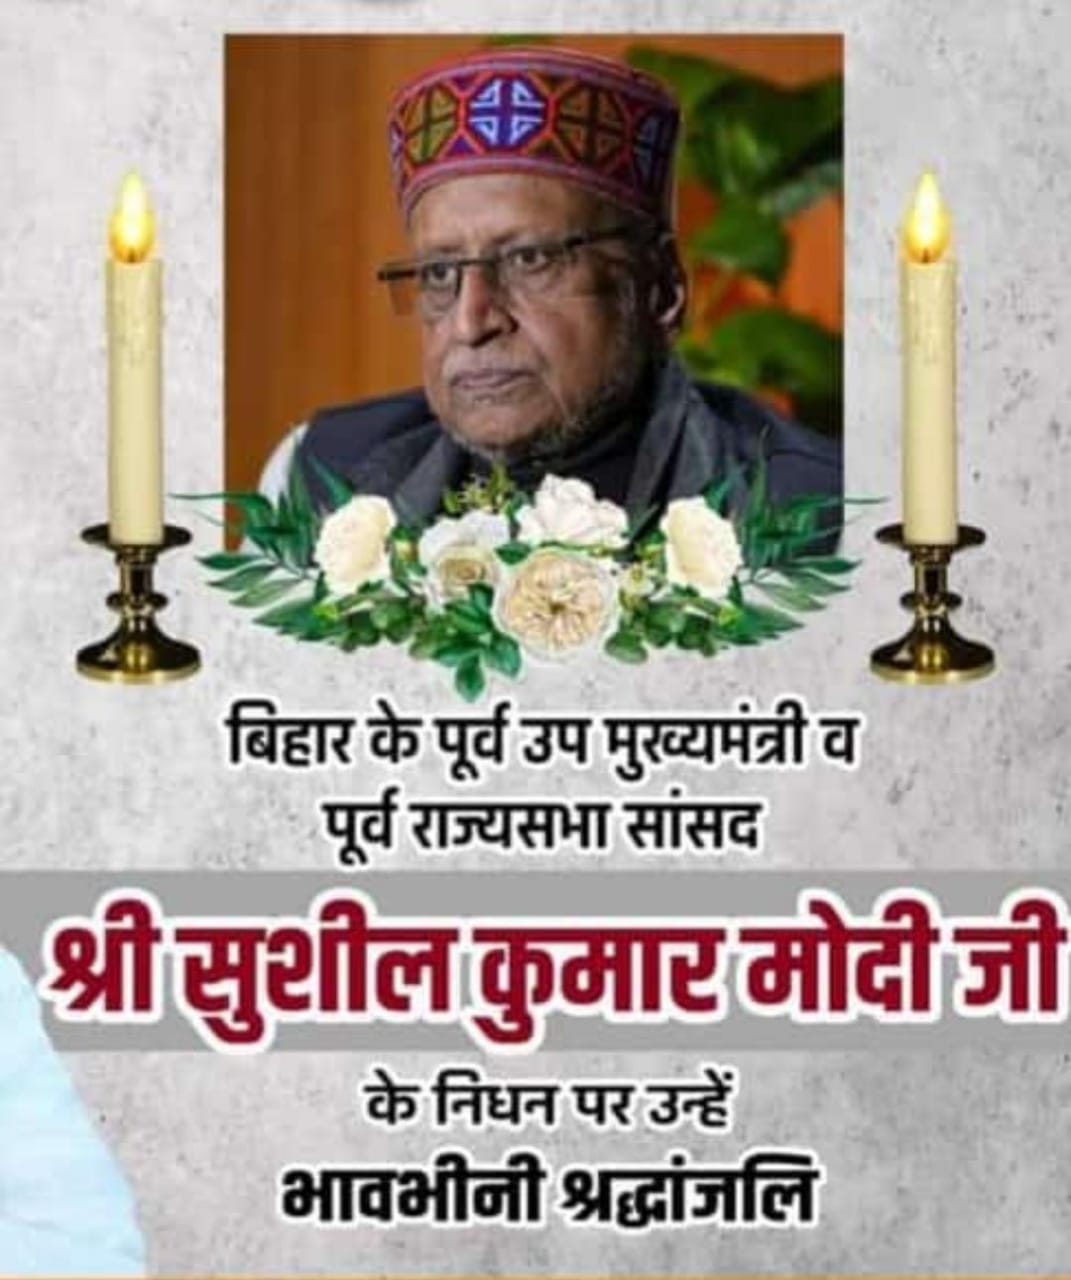 पूर्व उपमुख्यमंत्री और पूर्व राज्यसभा सांसद सुशील कुमार मोदी के निधन पर मुख्यमंत्री ने गहरी शोक संवेदना व्यक्त की...